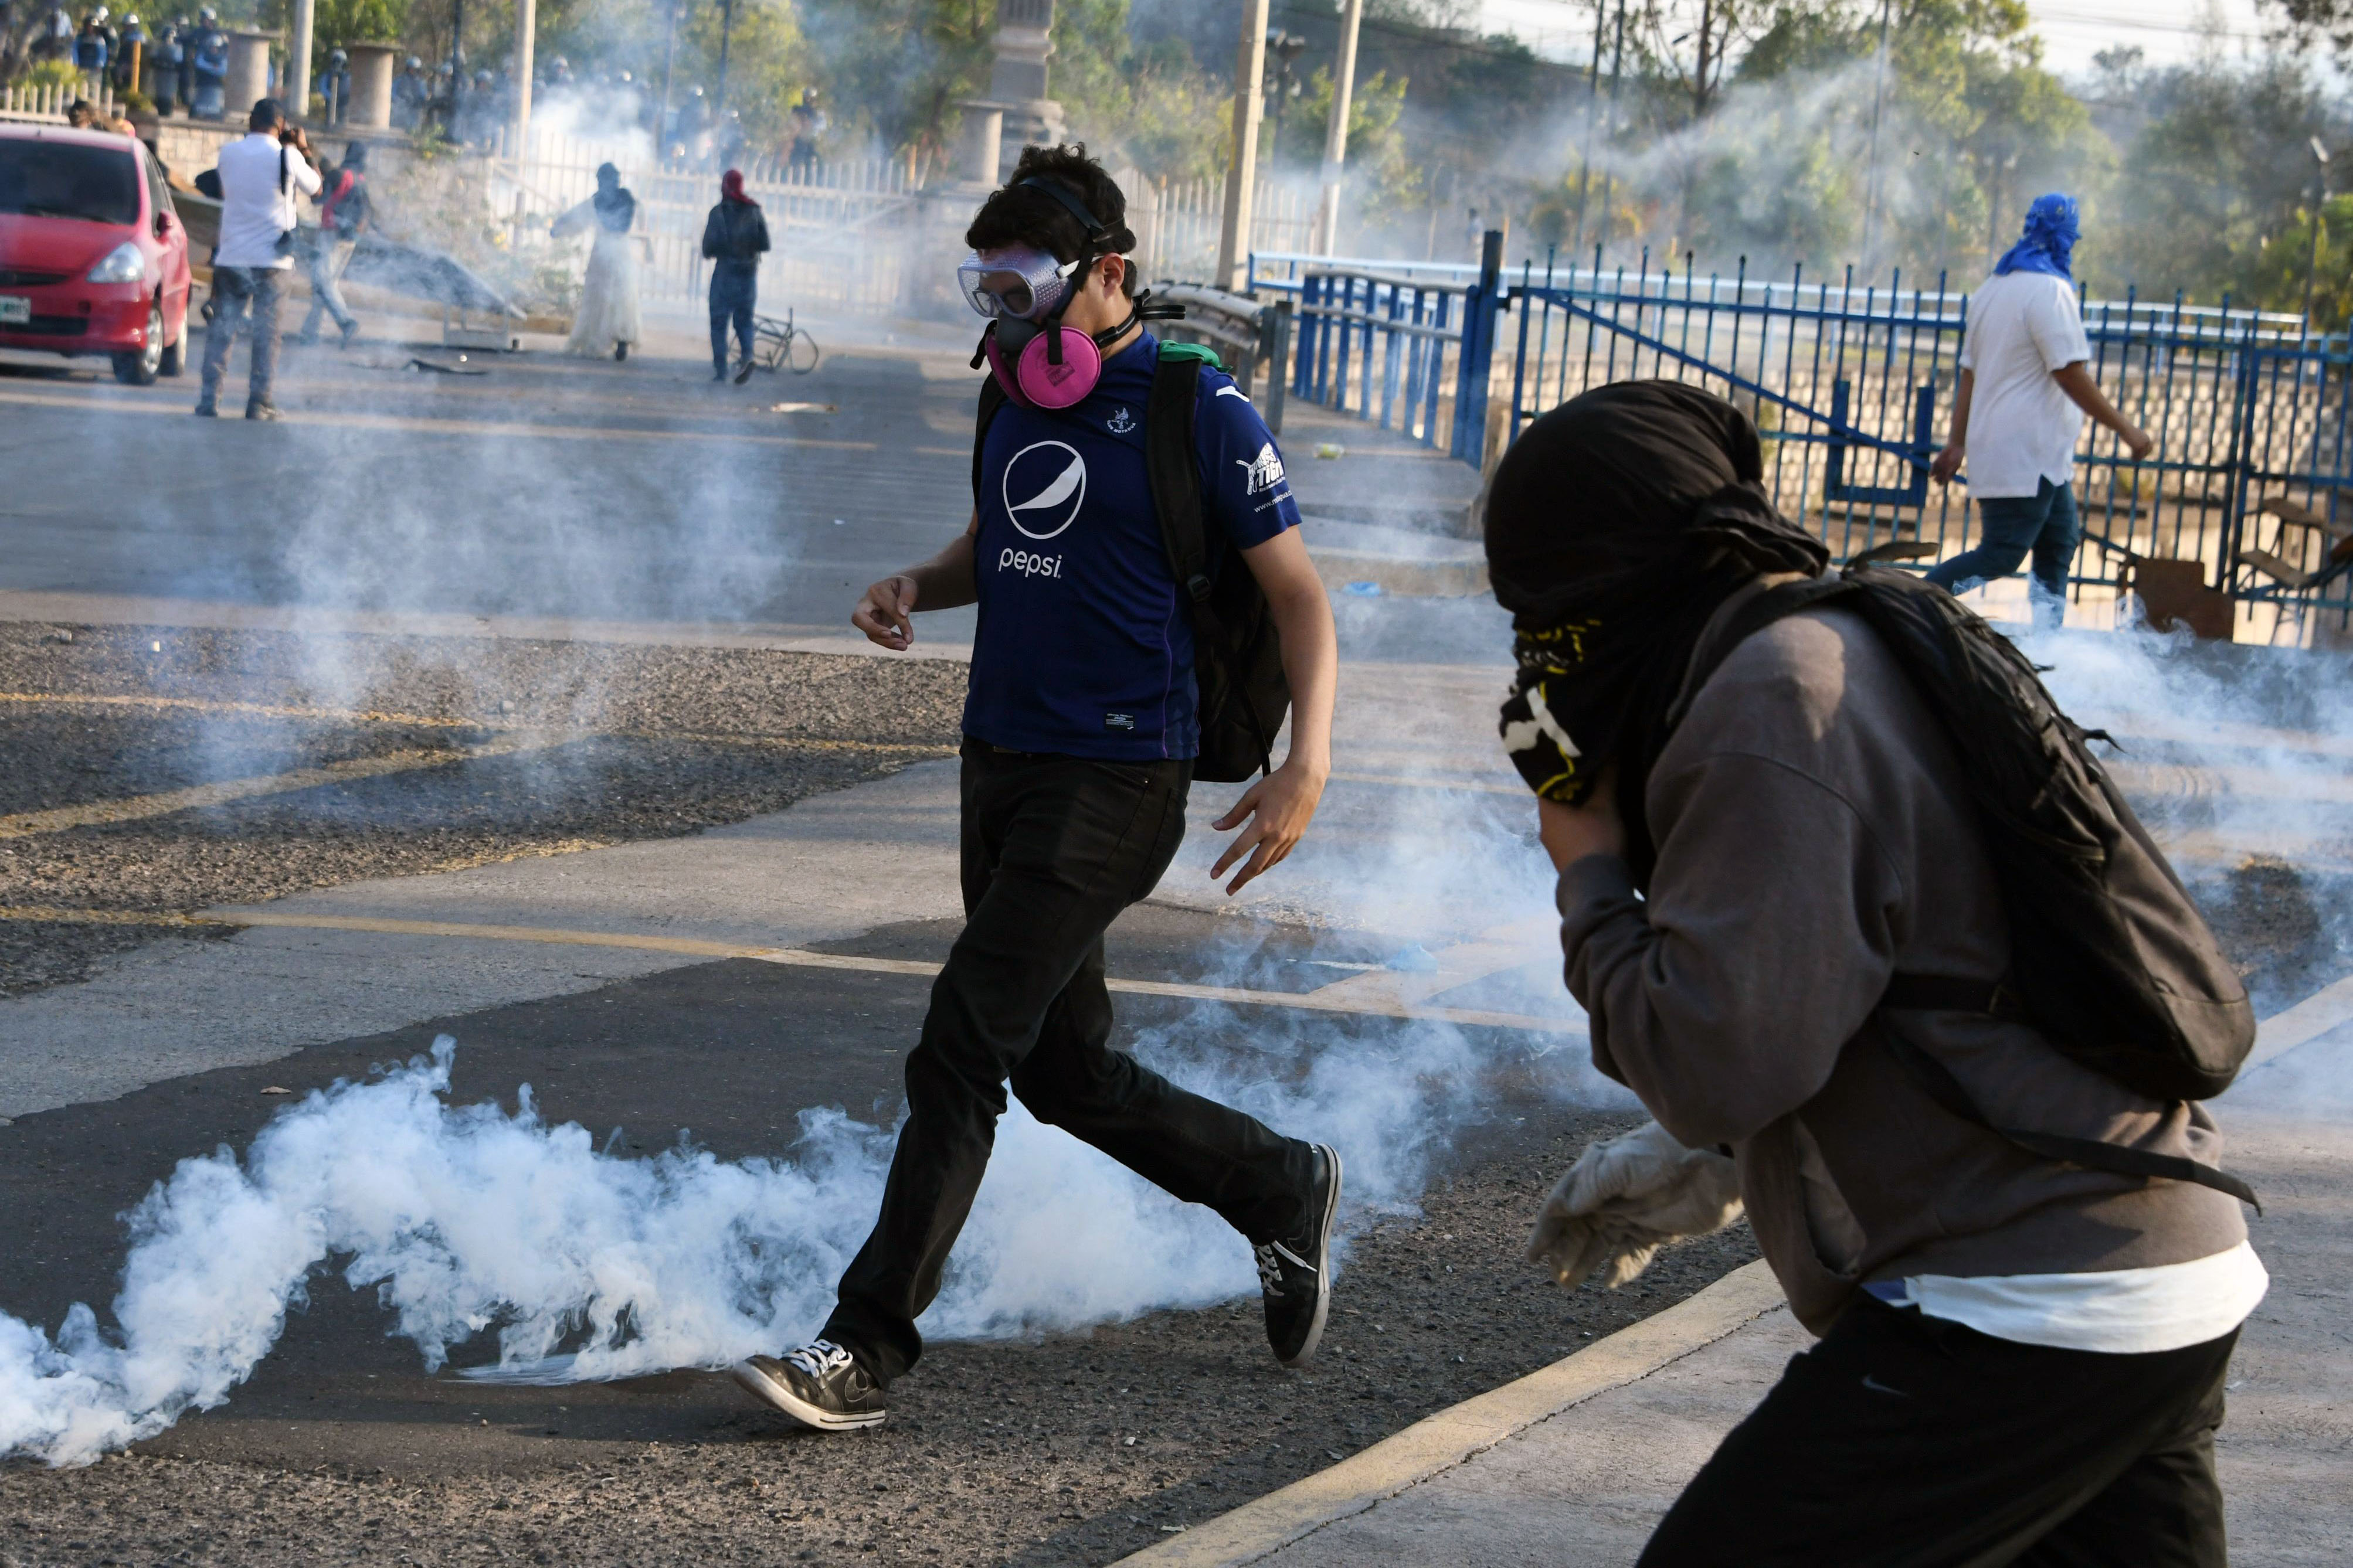 الغاز المسيل للدموع تفرق المتظاهرين